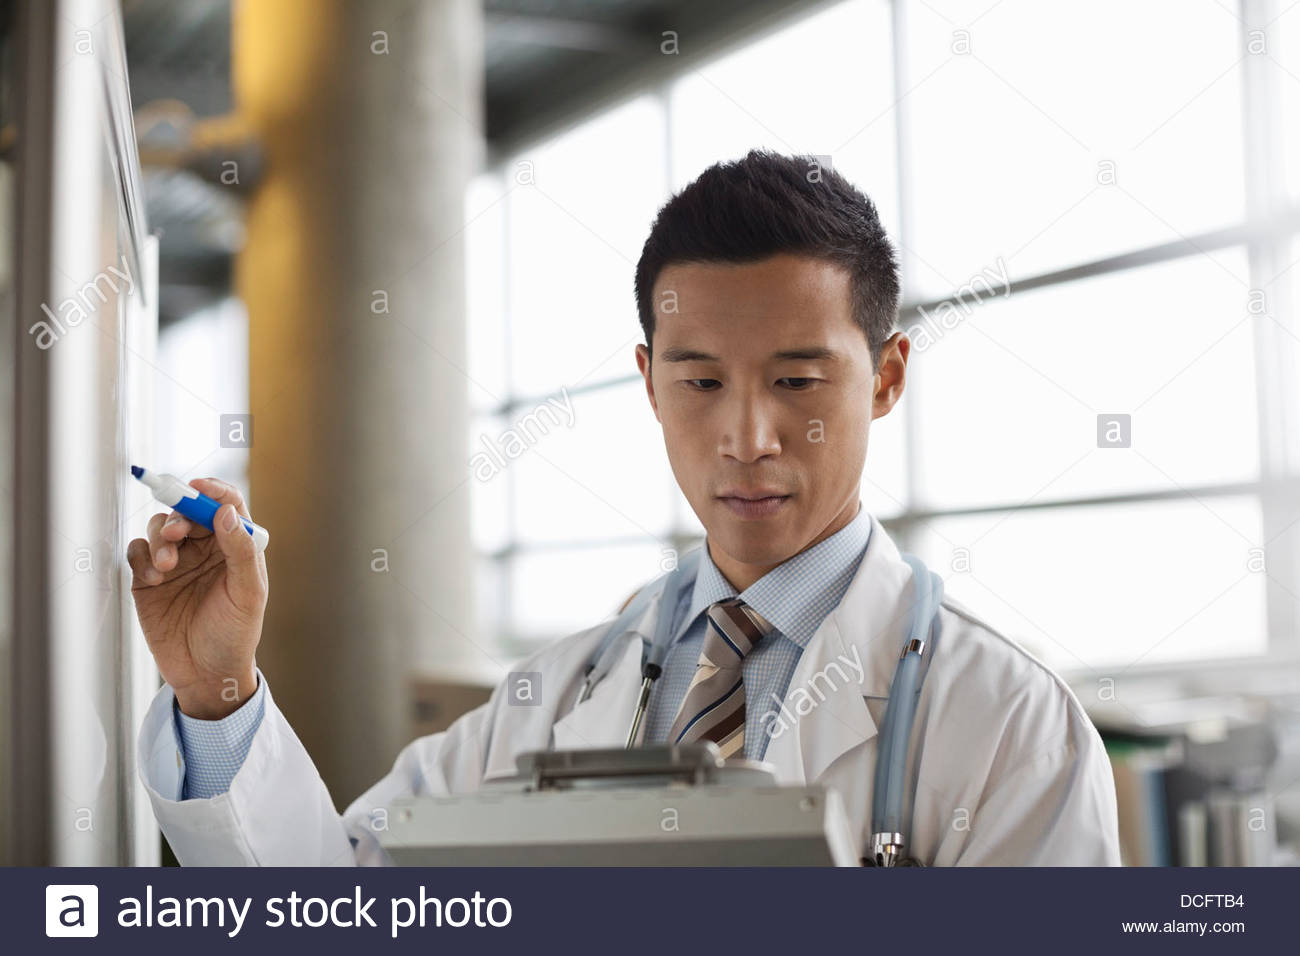 Medico maschio copia degli appunti da appunti Foto Stock